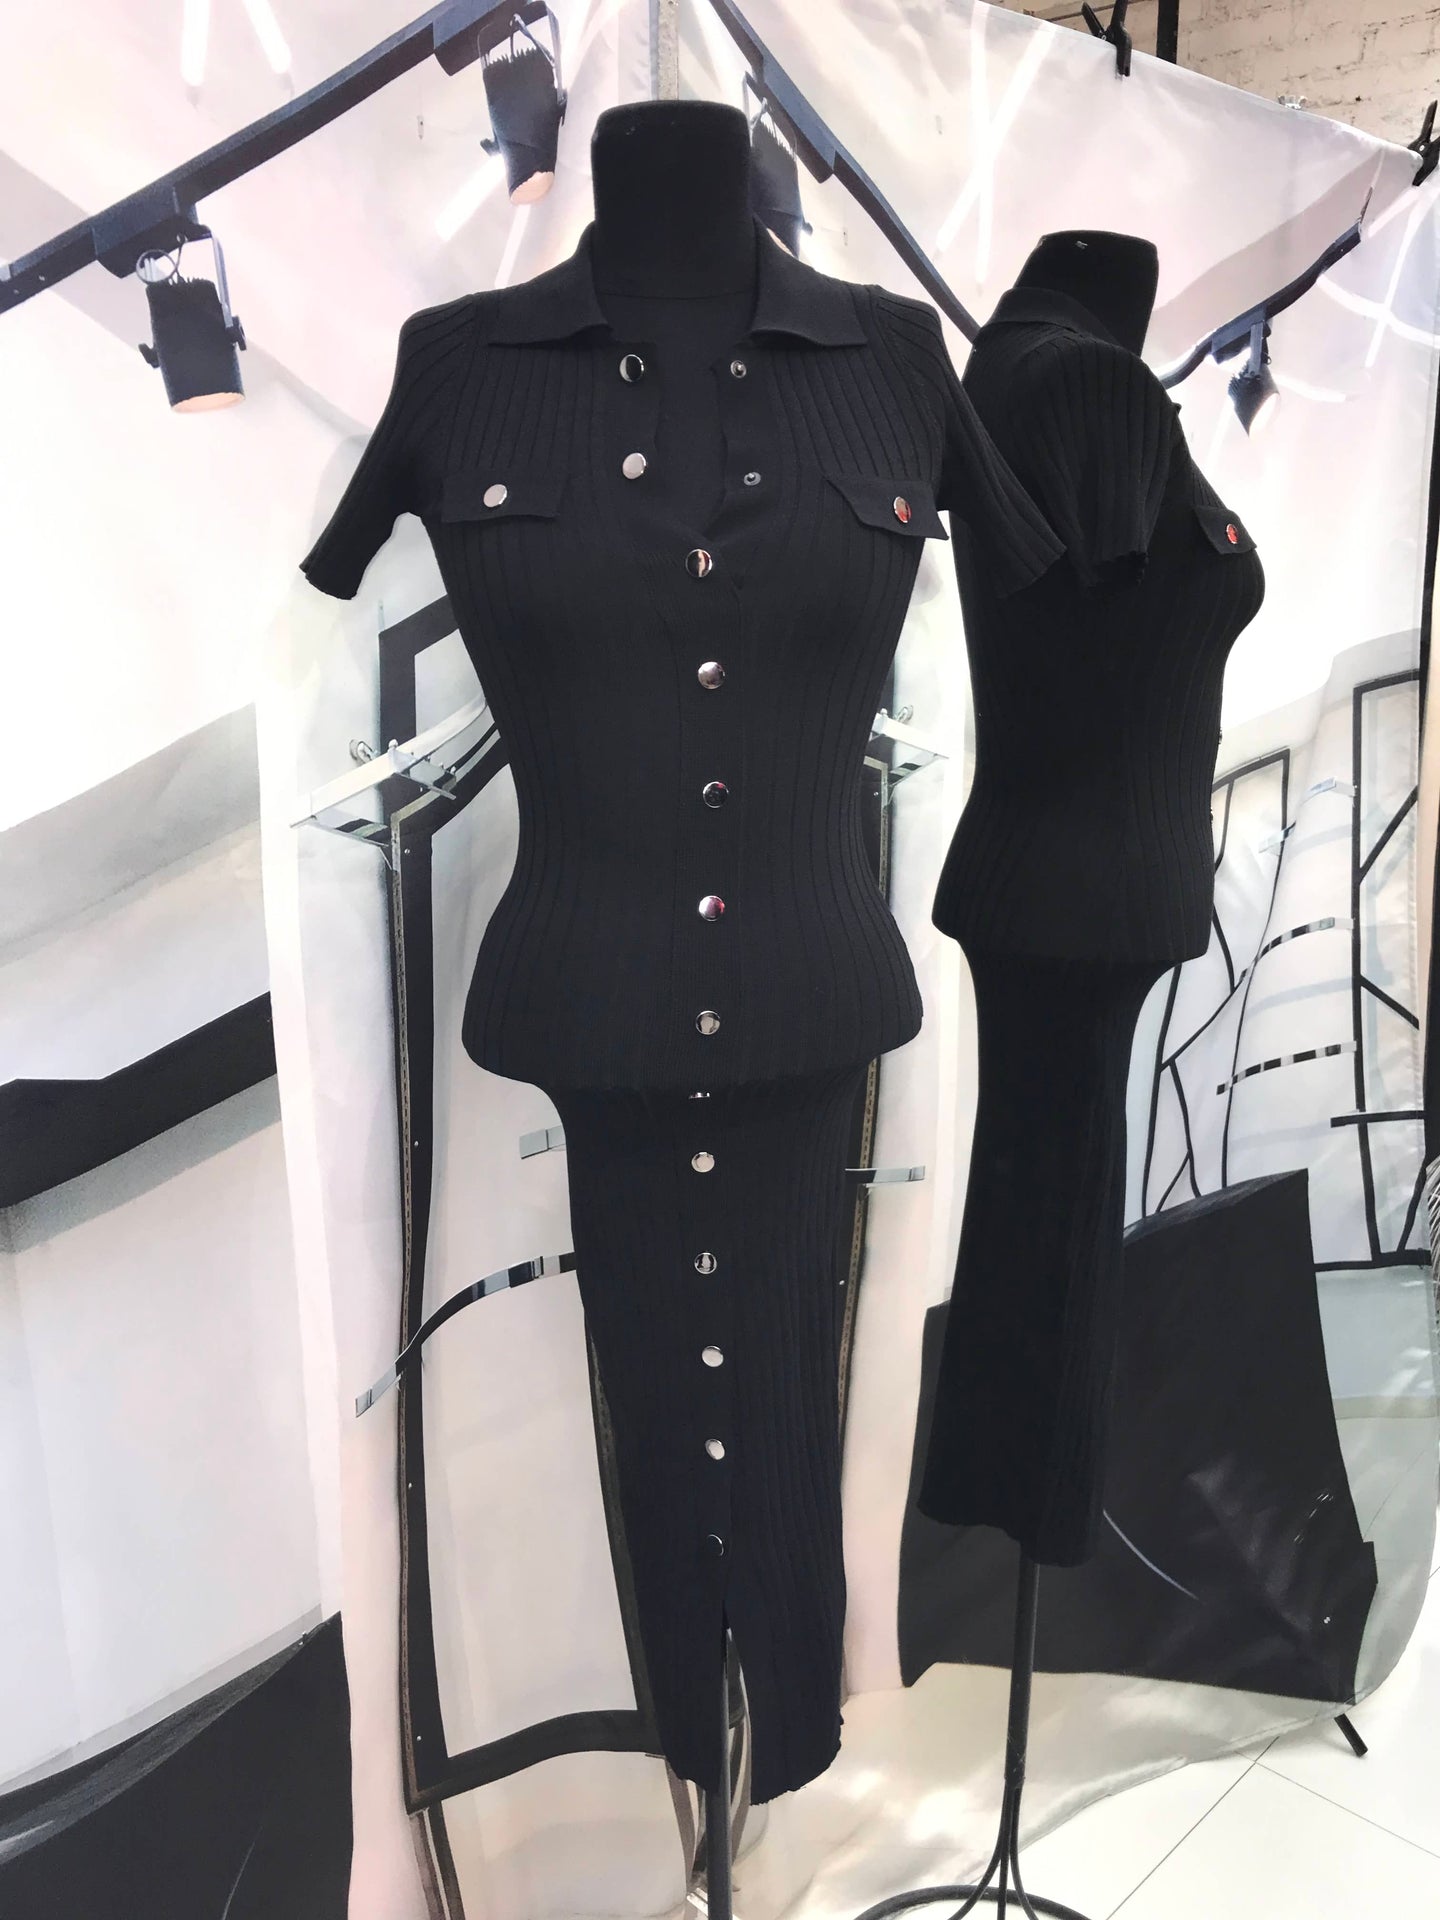 Vestido corto manga corta de rib negro con botones al frente